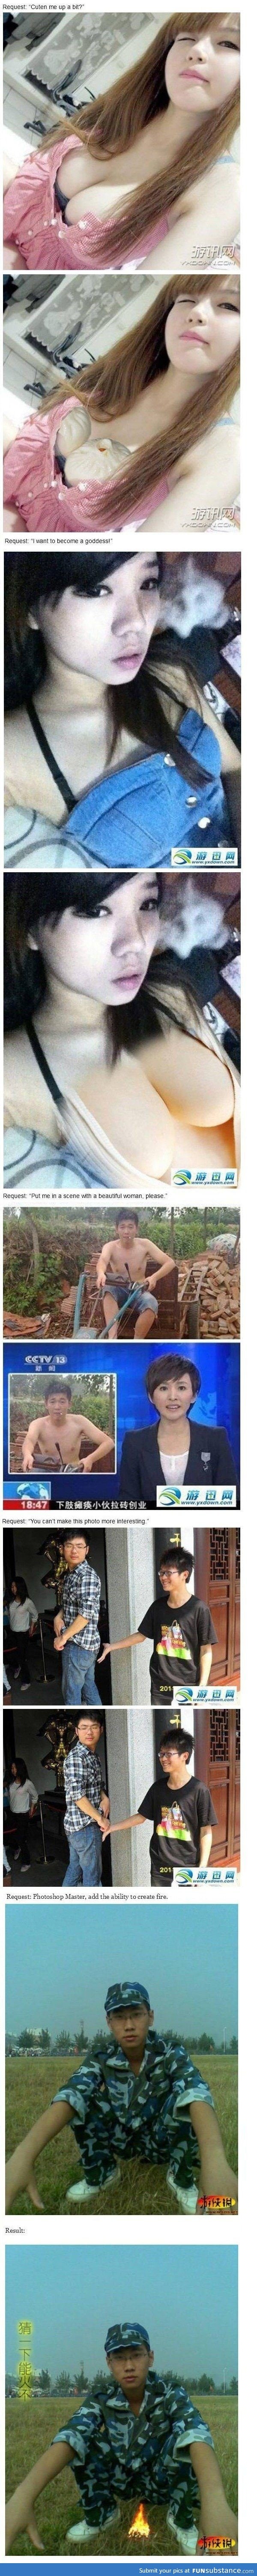 Chinese photoshop master